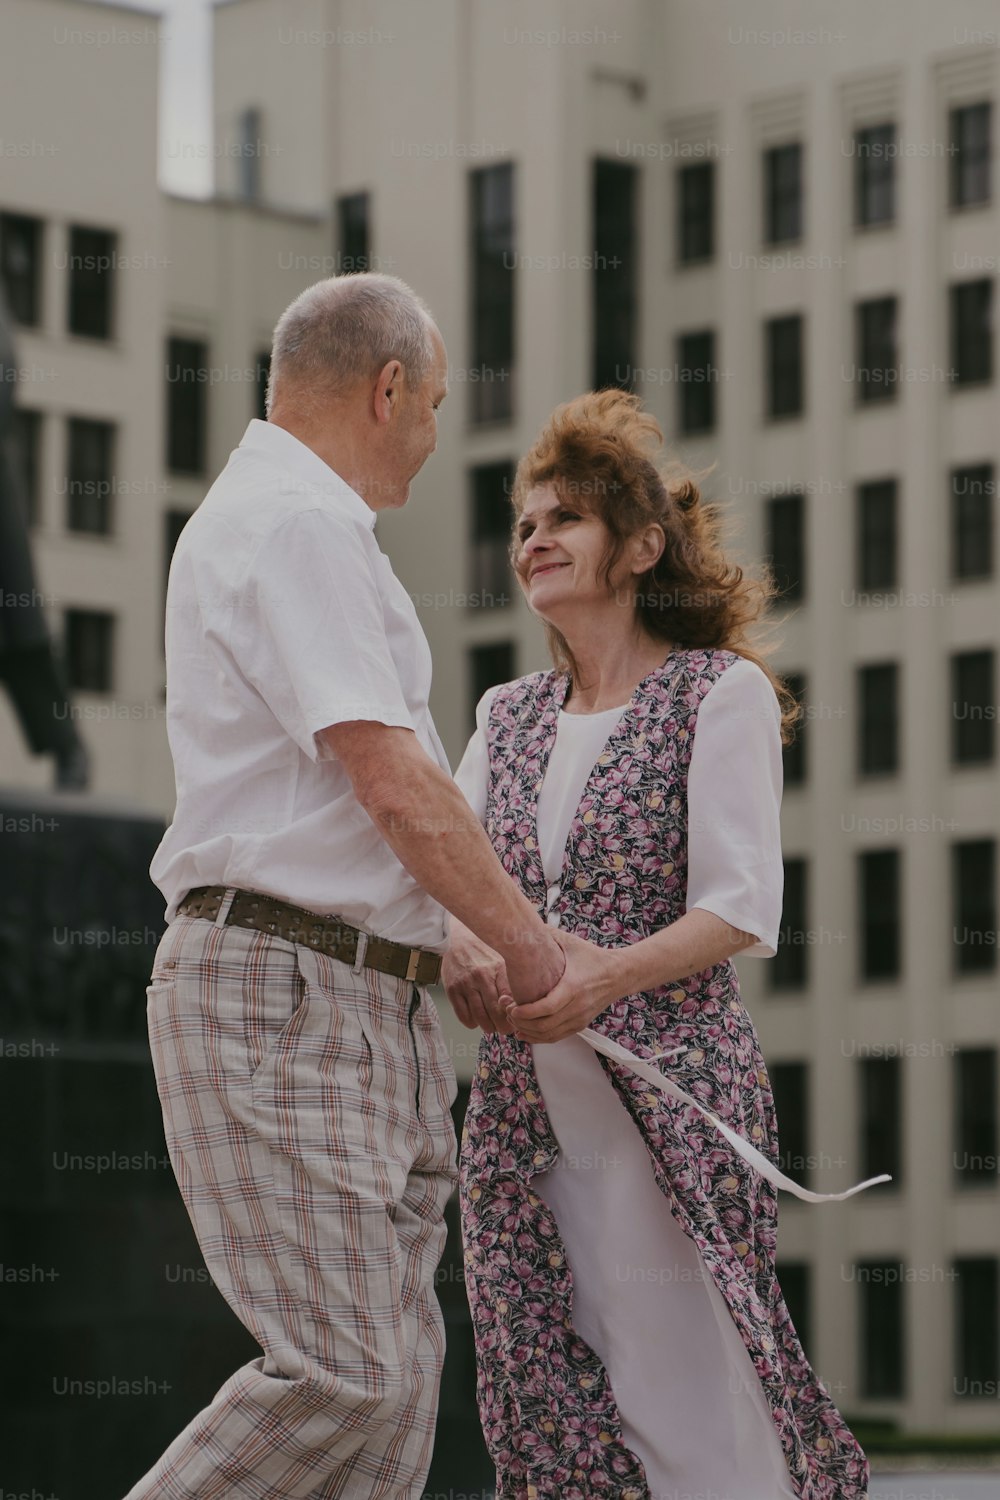 건물 앞에서 손을 잡고 있는 남자와 여자